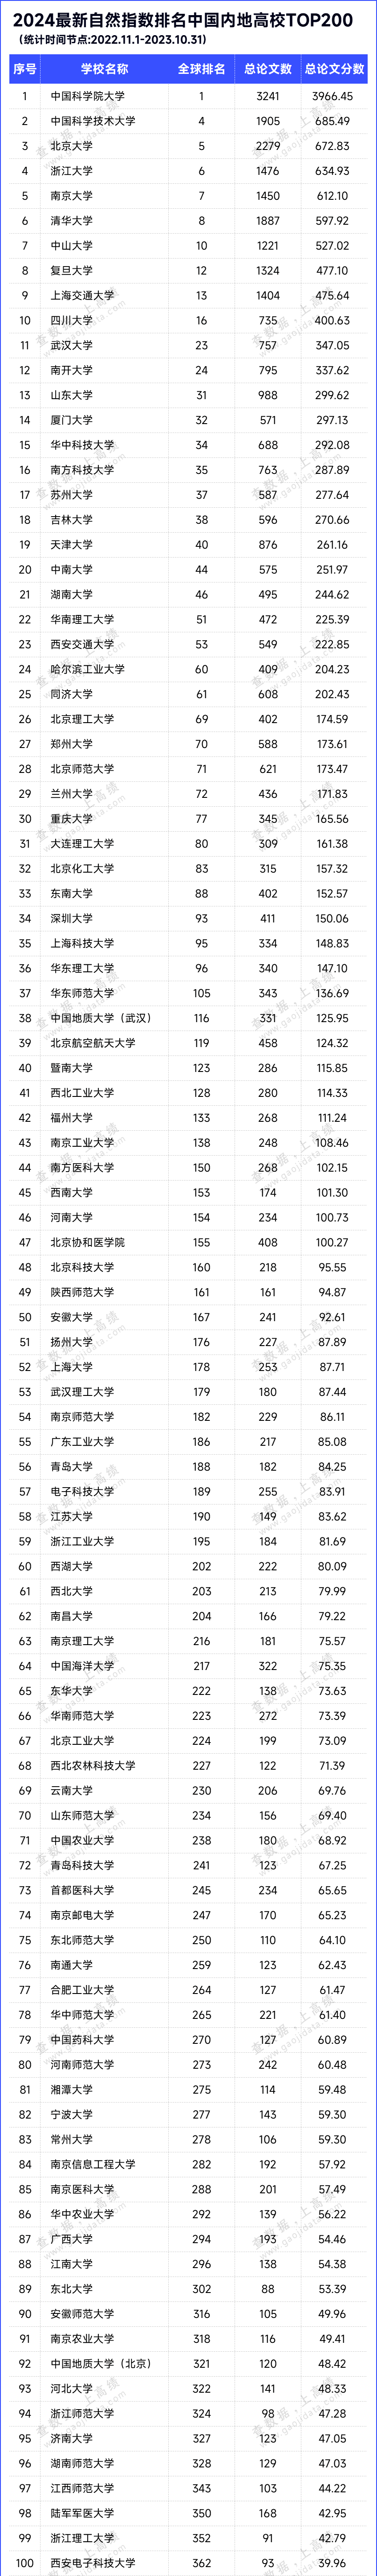 2024最新自然指数排名中国内地高校TOP200名单